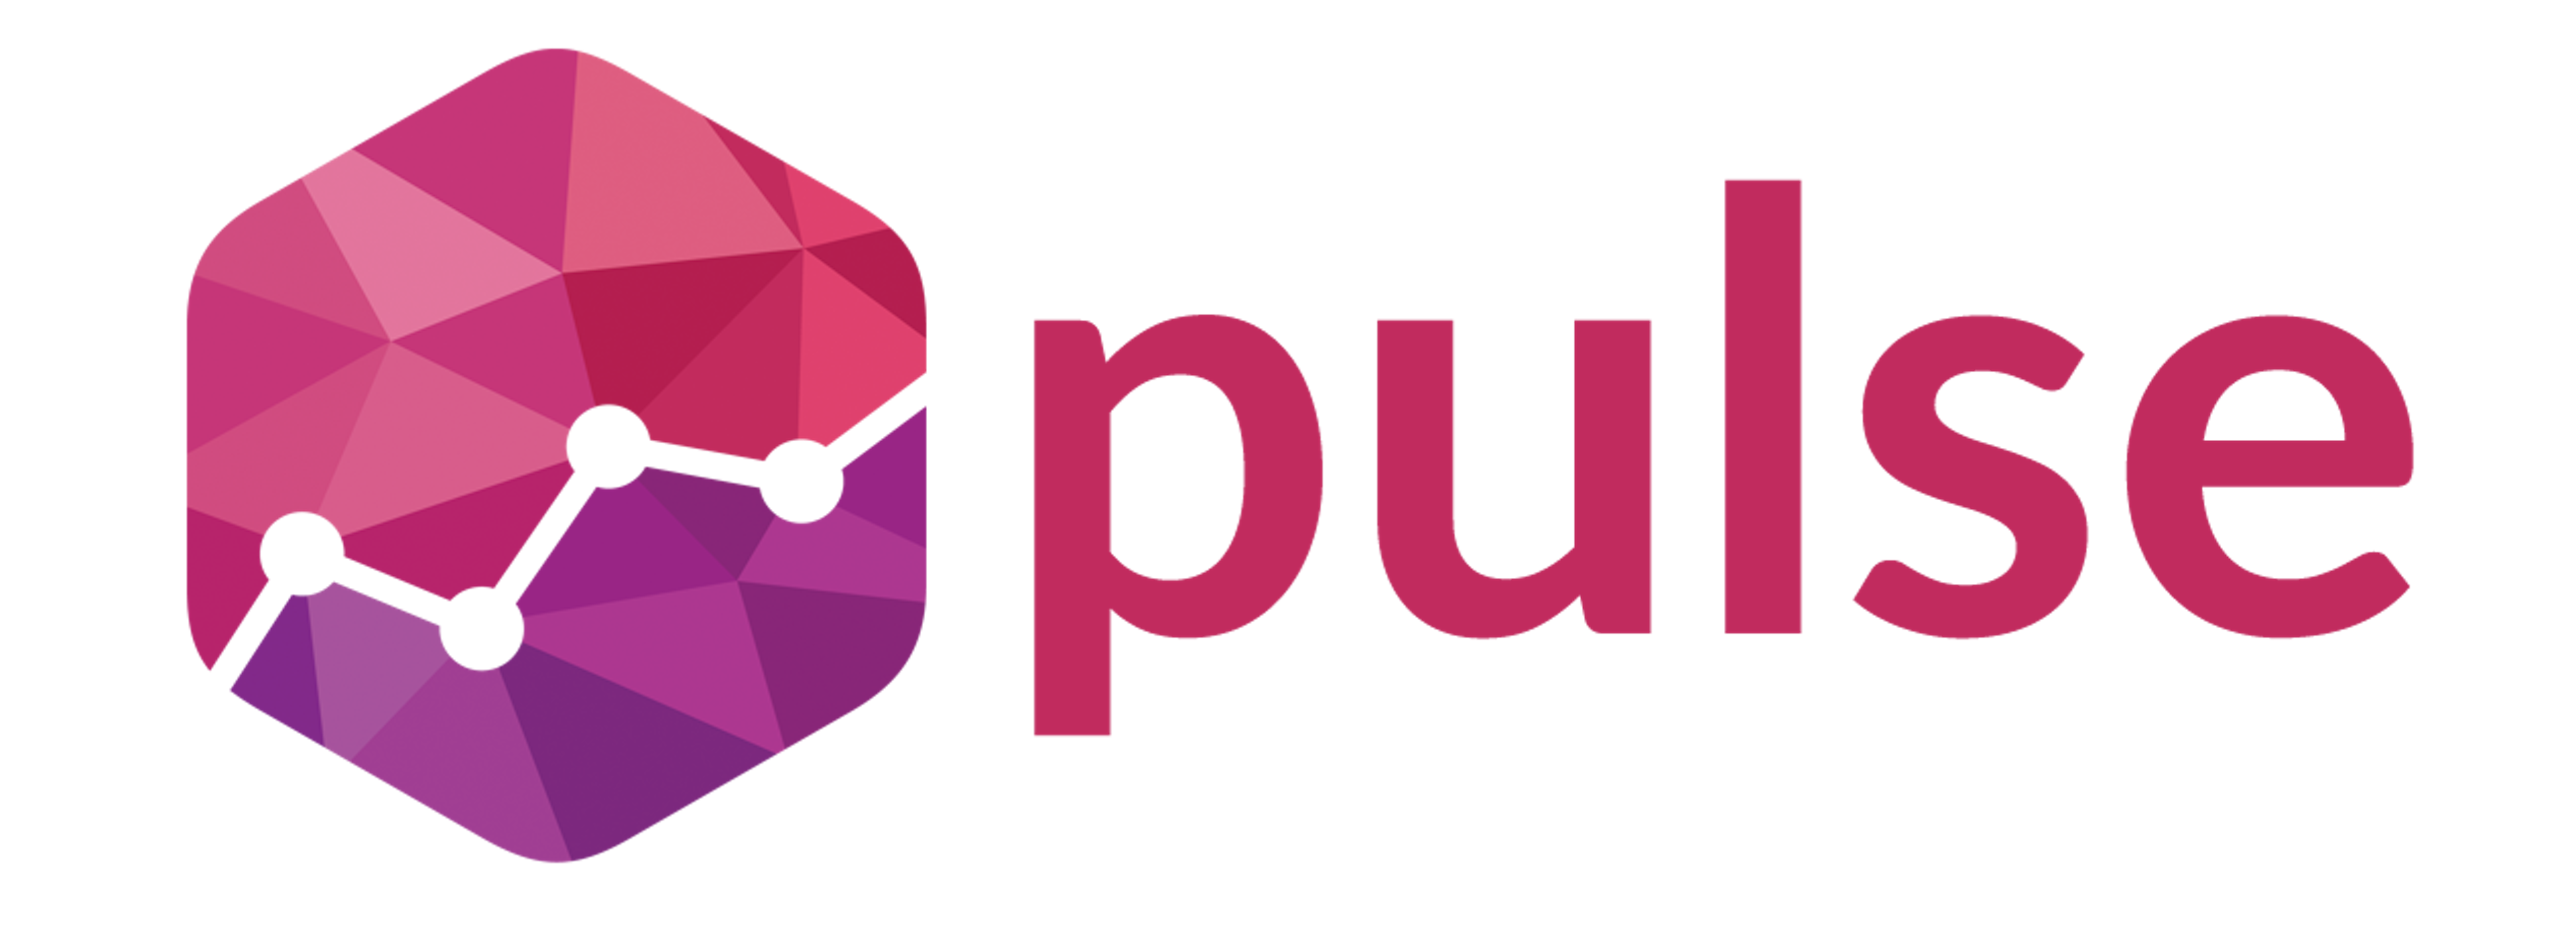 Pulse For Good Logo